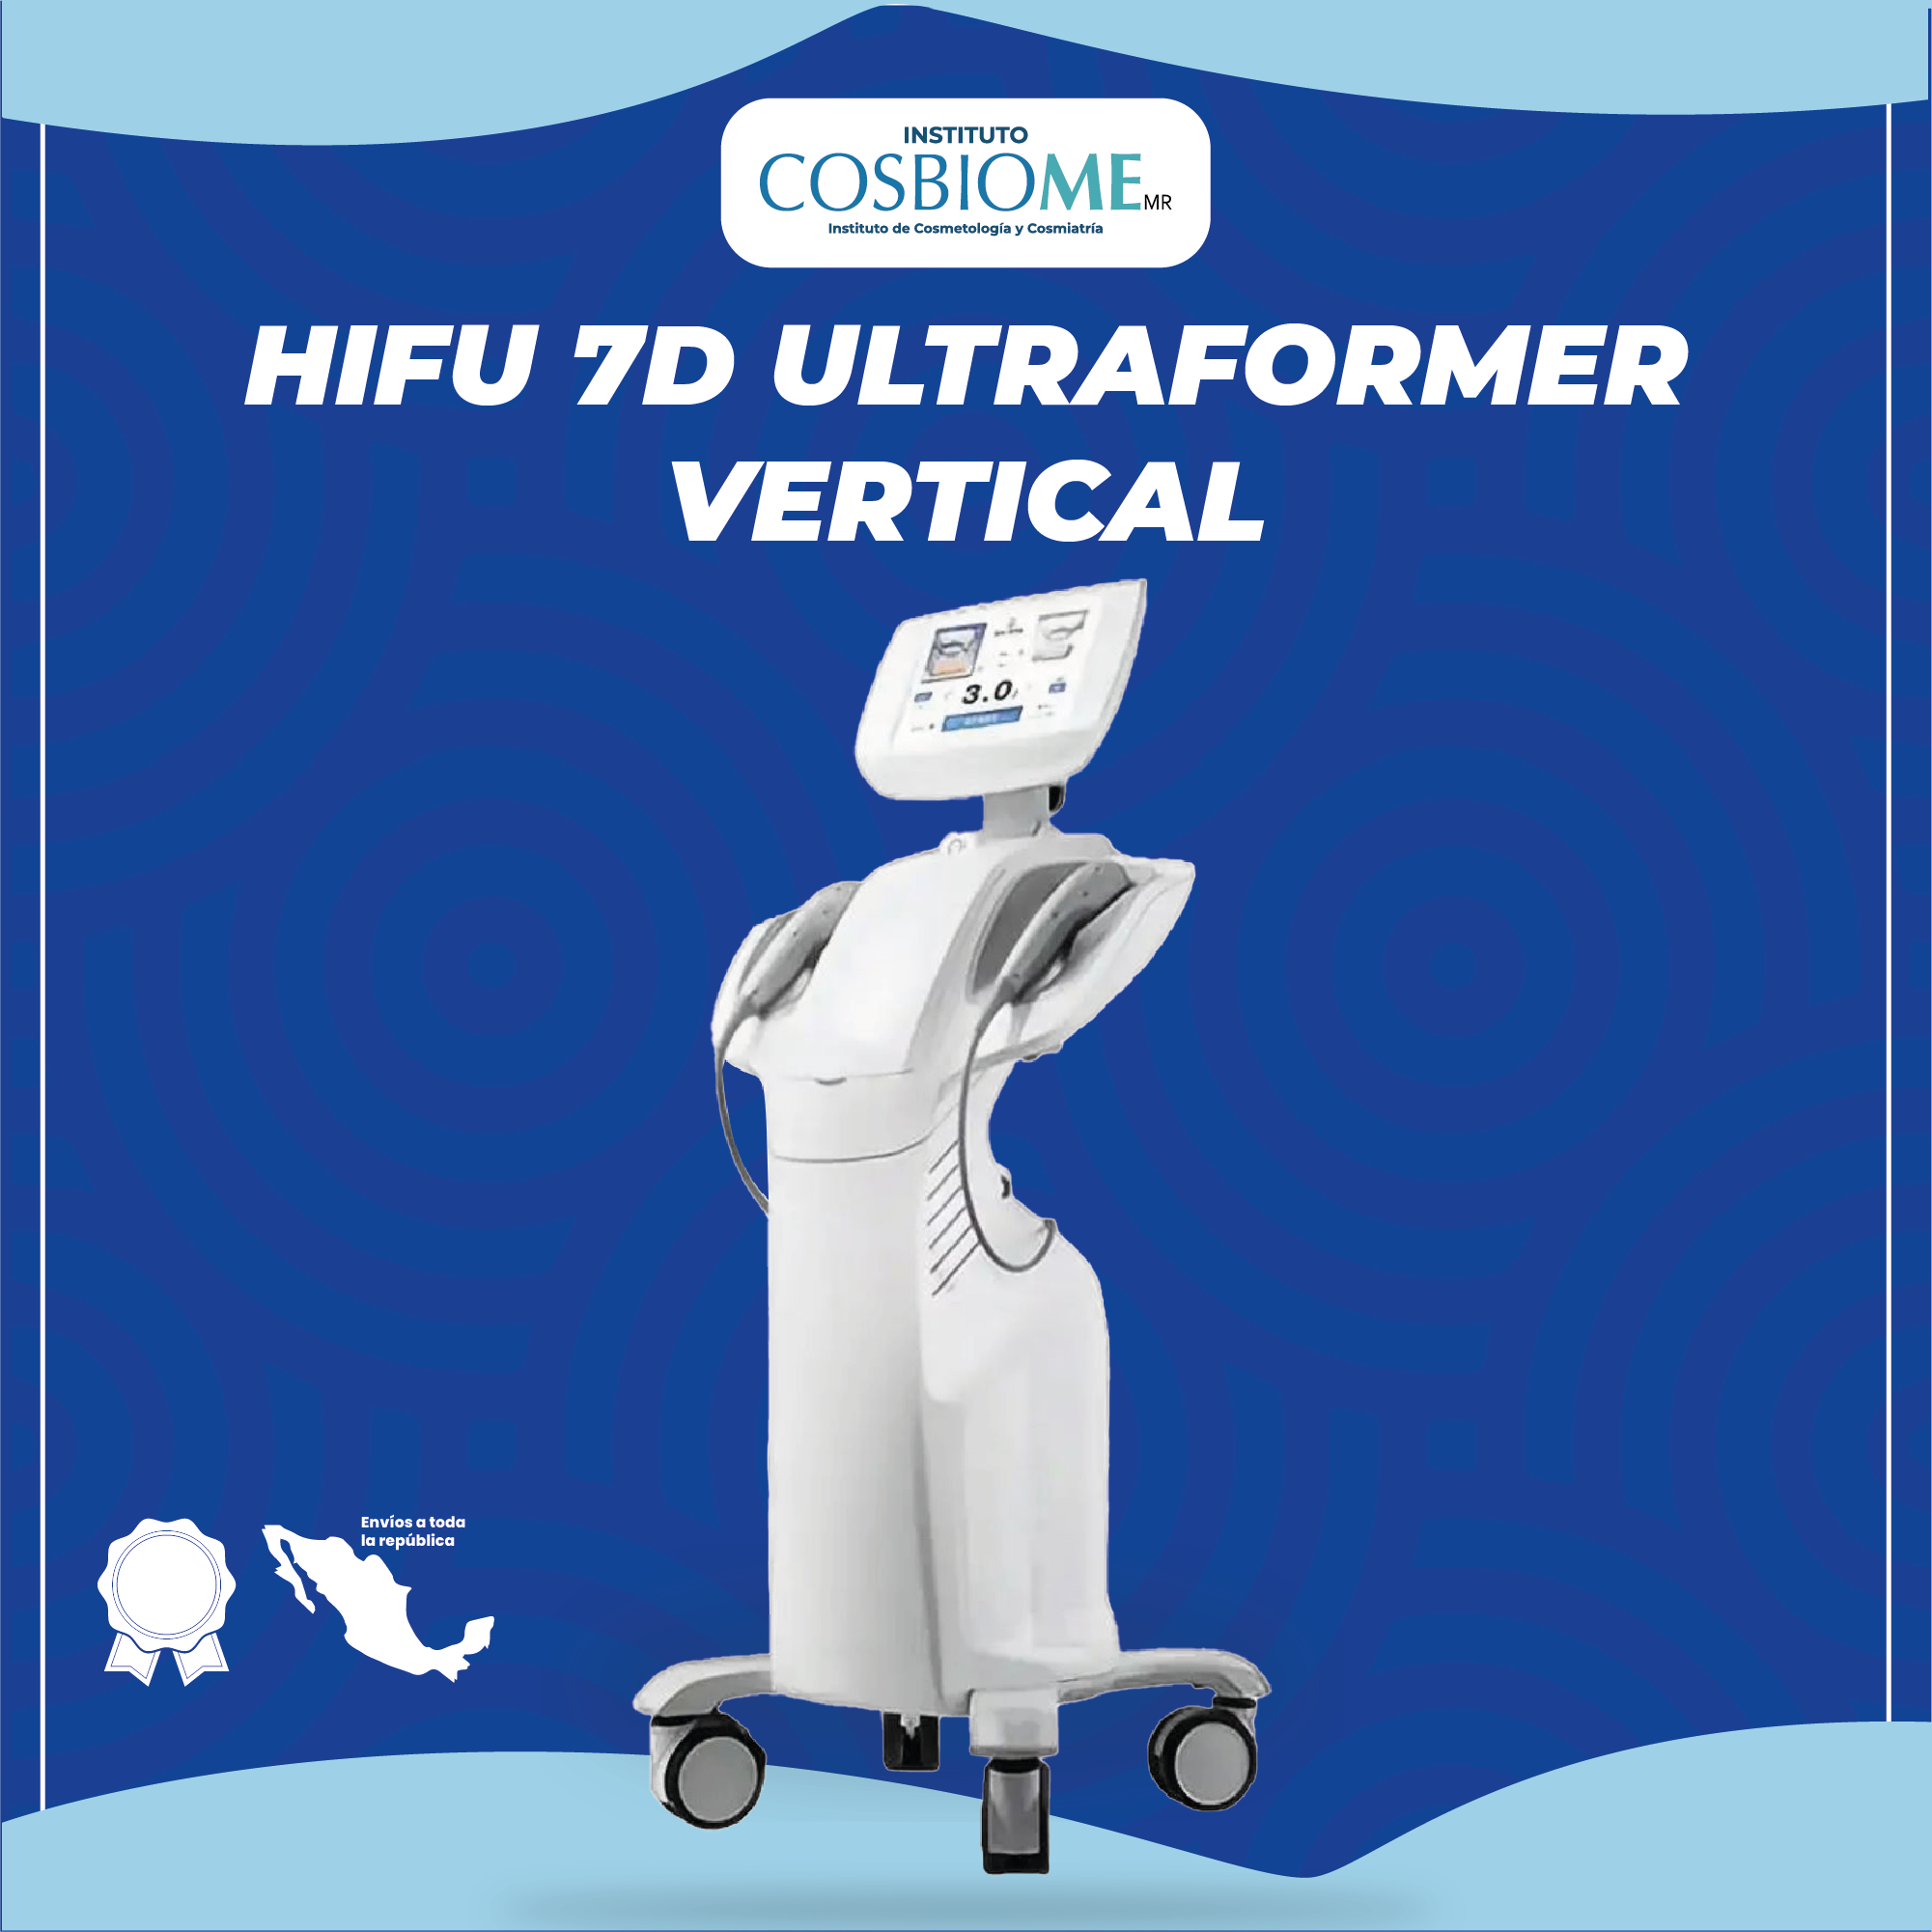 HIFU 7D ULTRAFORMER VERTICAL 